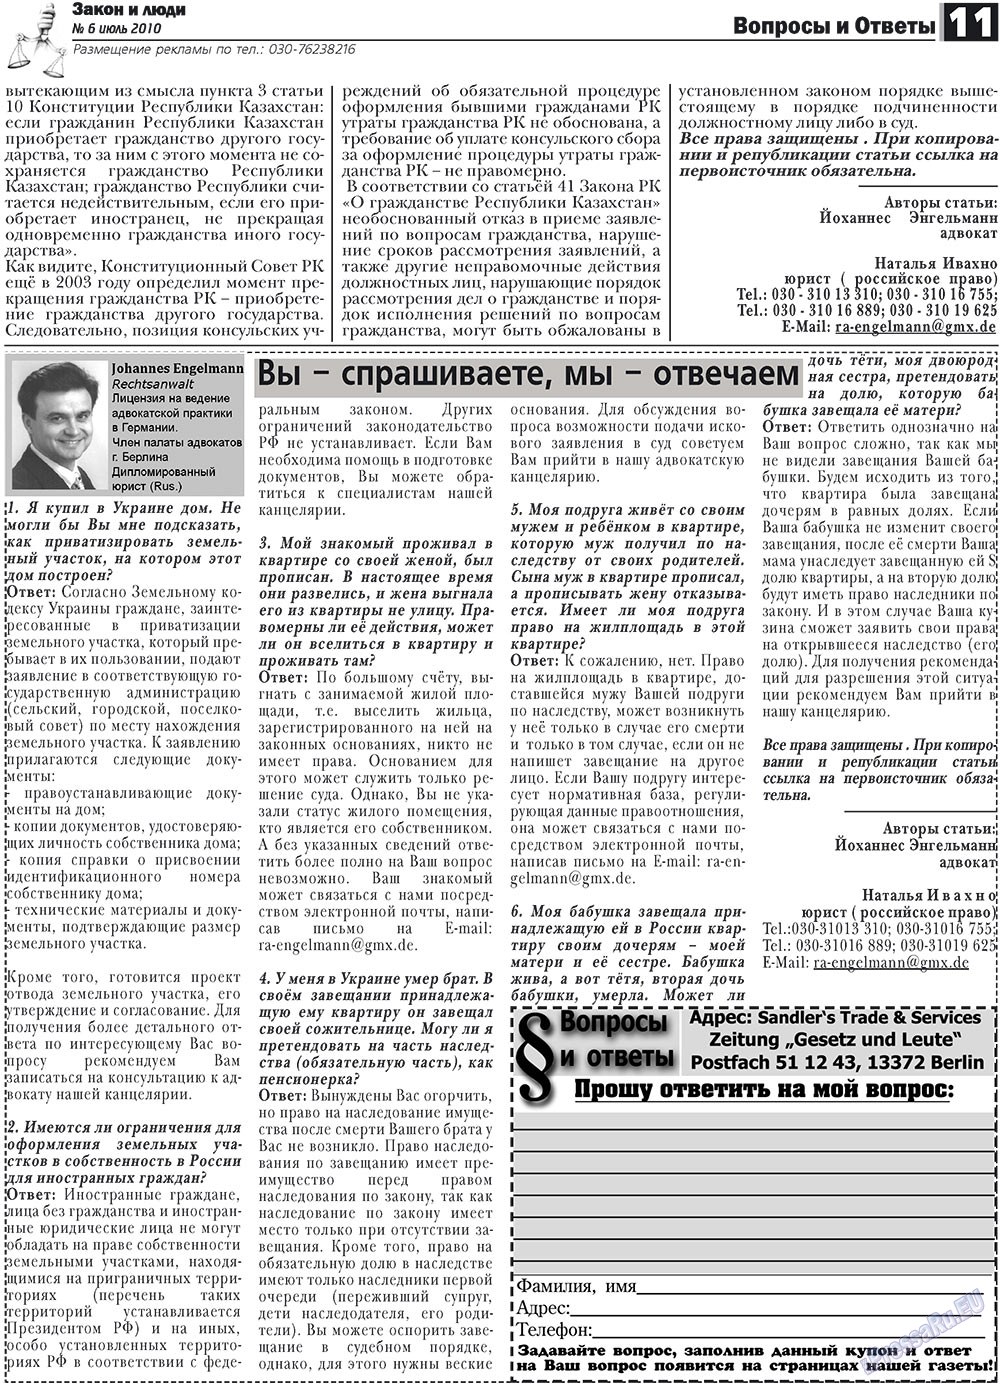 Закон и люди, газета. 2010 №6 стр.11